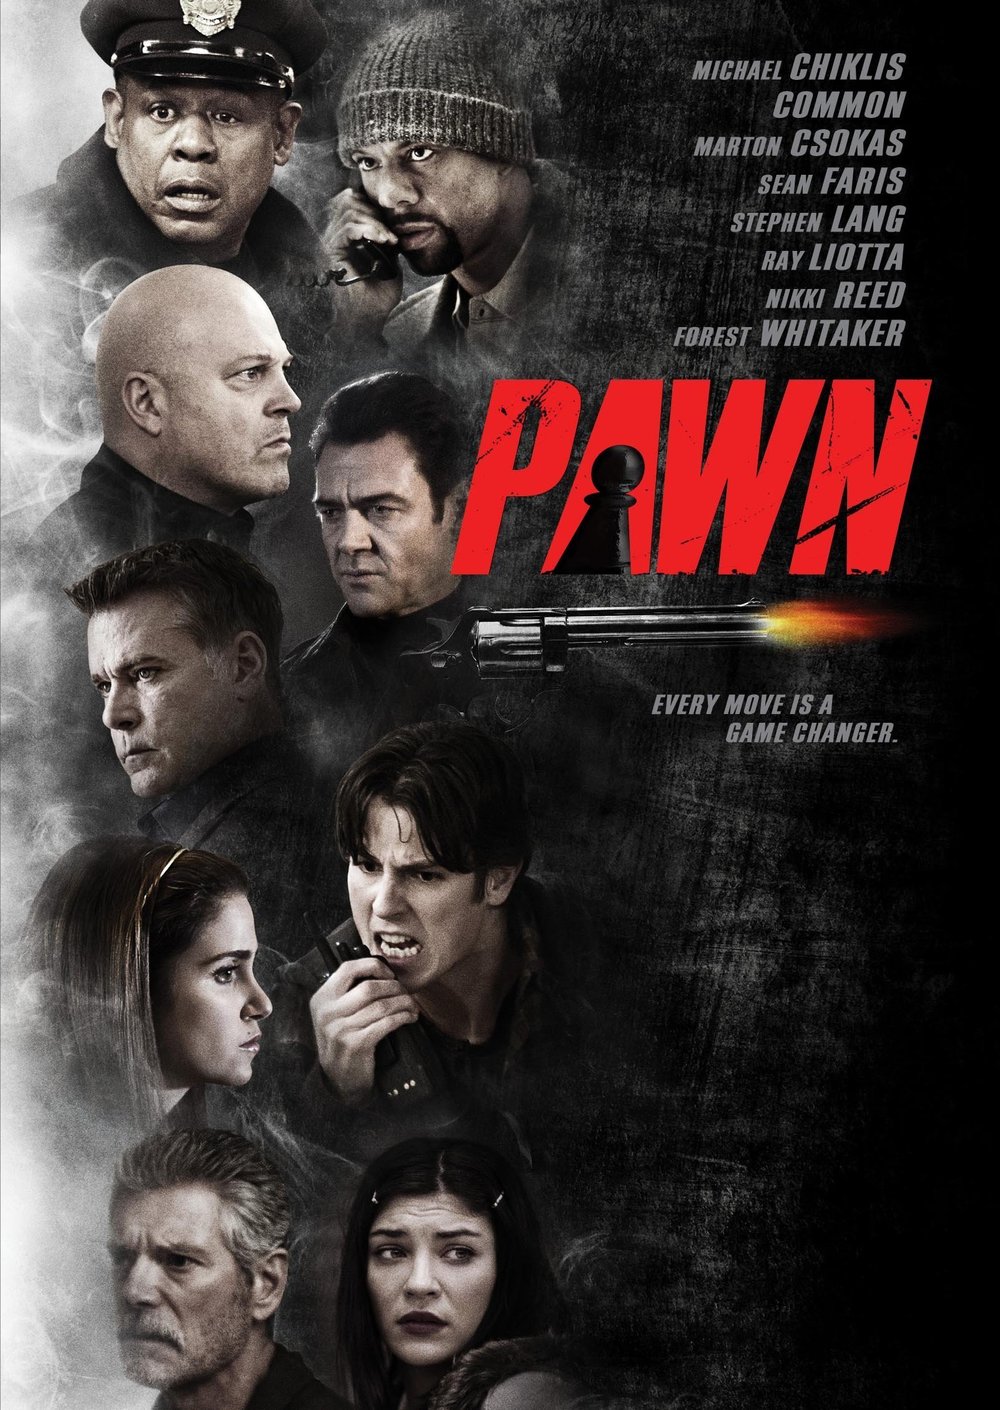 Pawn Sacrifice DVD Release Date  Redbox, Netflix, iTunes